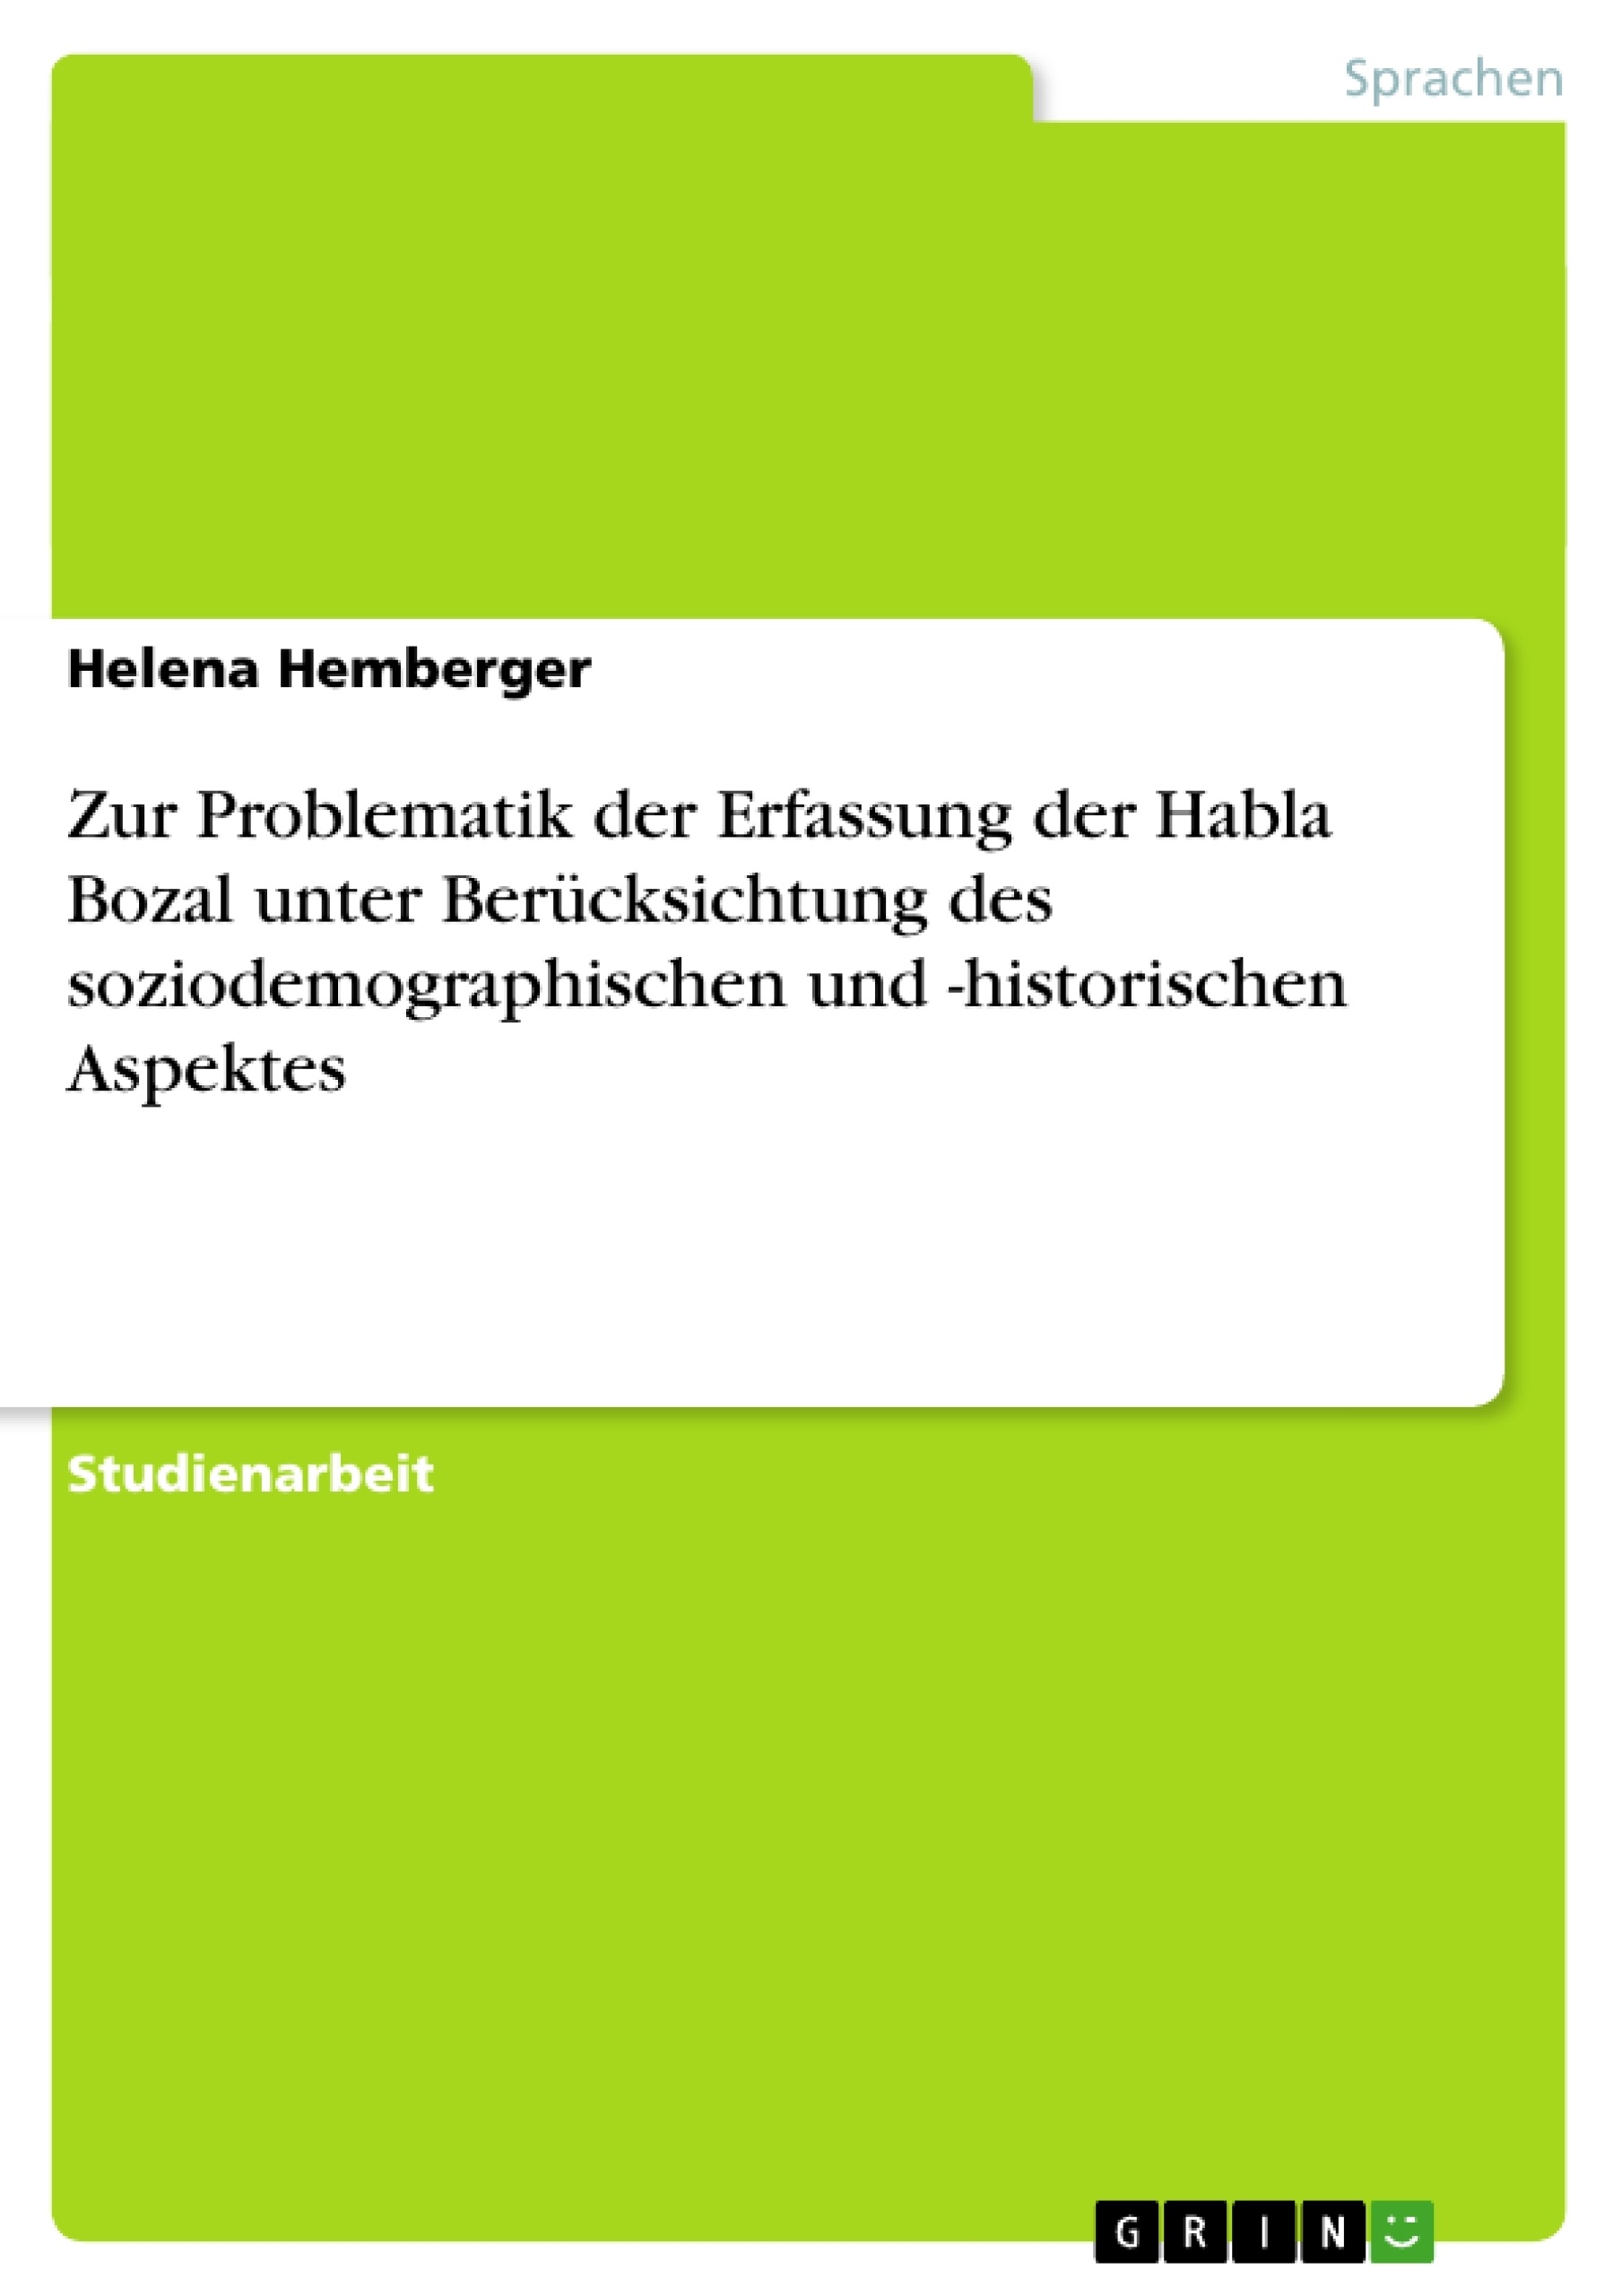 Título: Zur Problematik der Erfassung der Habla Bozal unter Berücksichtung des soziodemographischen und -historischen Aspektes